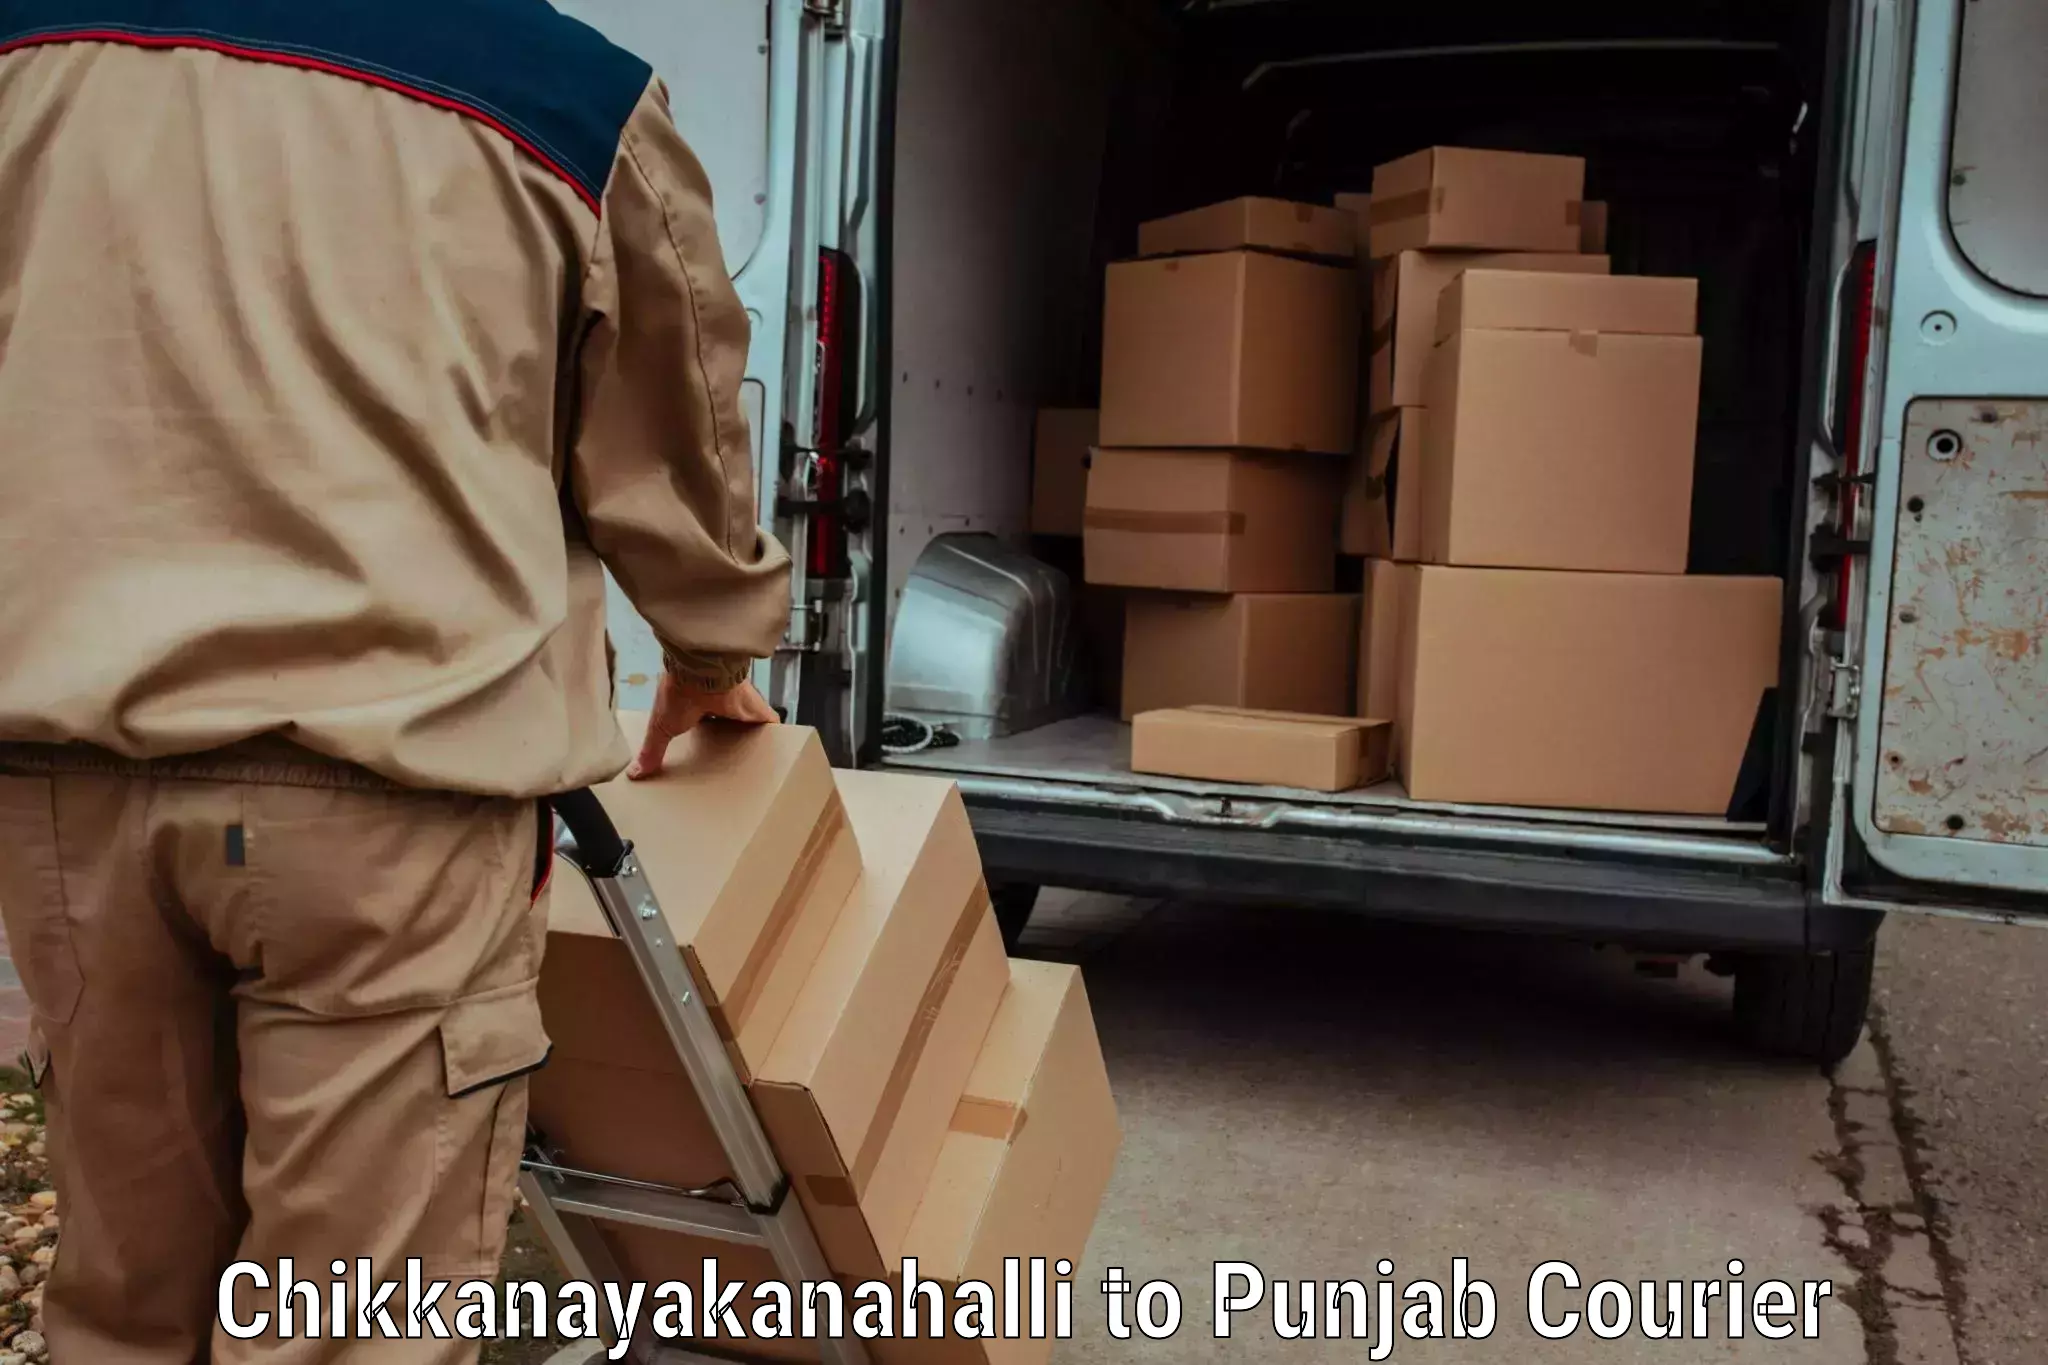 Fast-track shipping solutions Chikkanayakanahalli to Bathinda